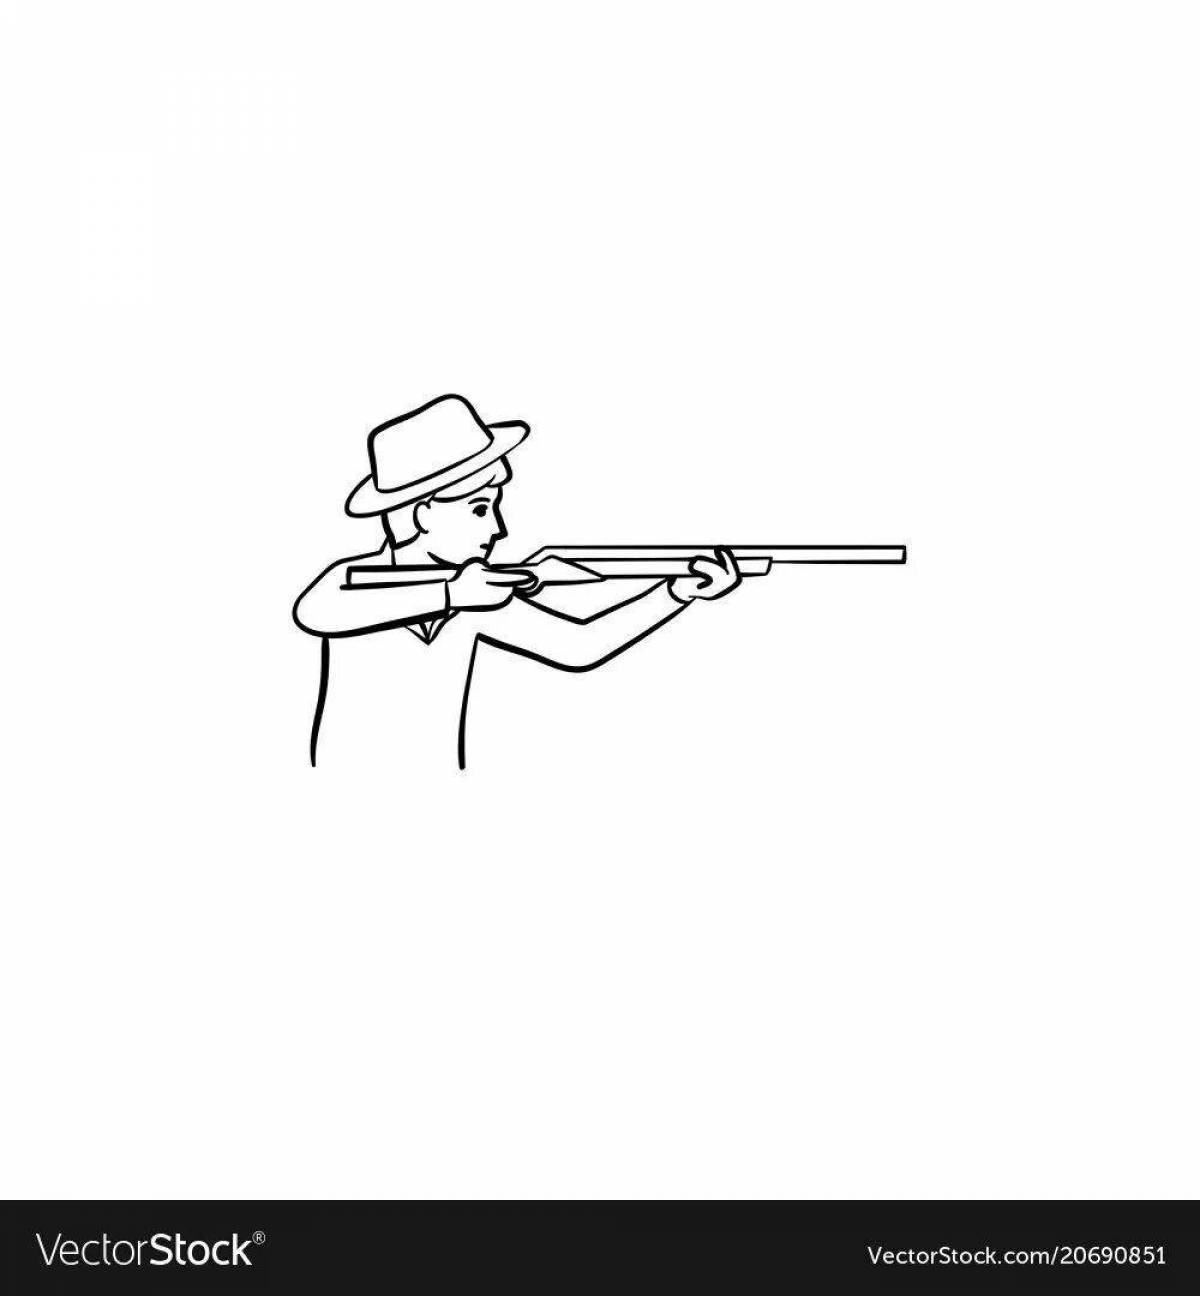 Раскраска охотника с ружьем для детей